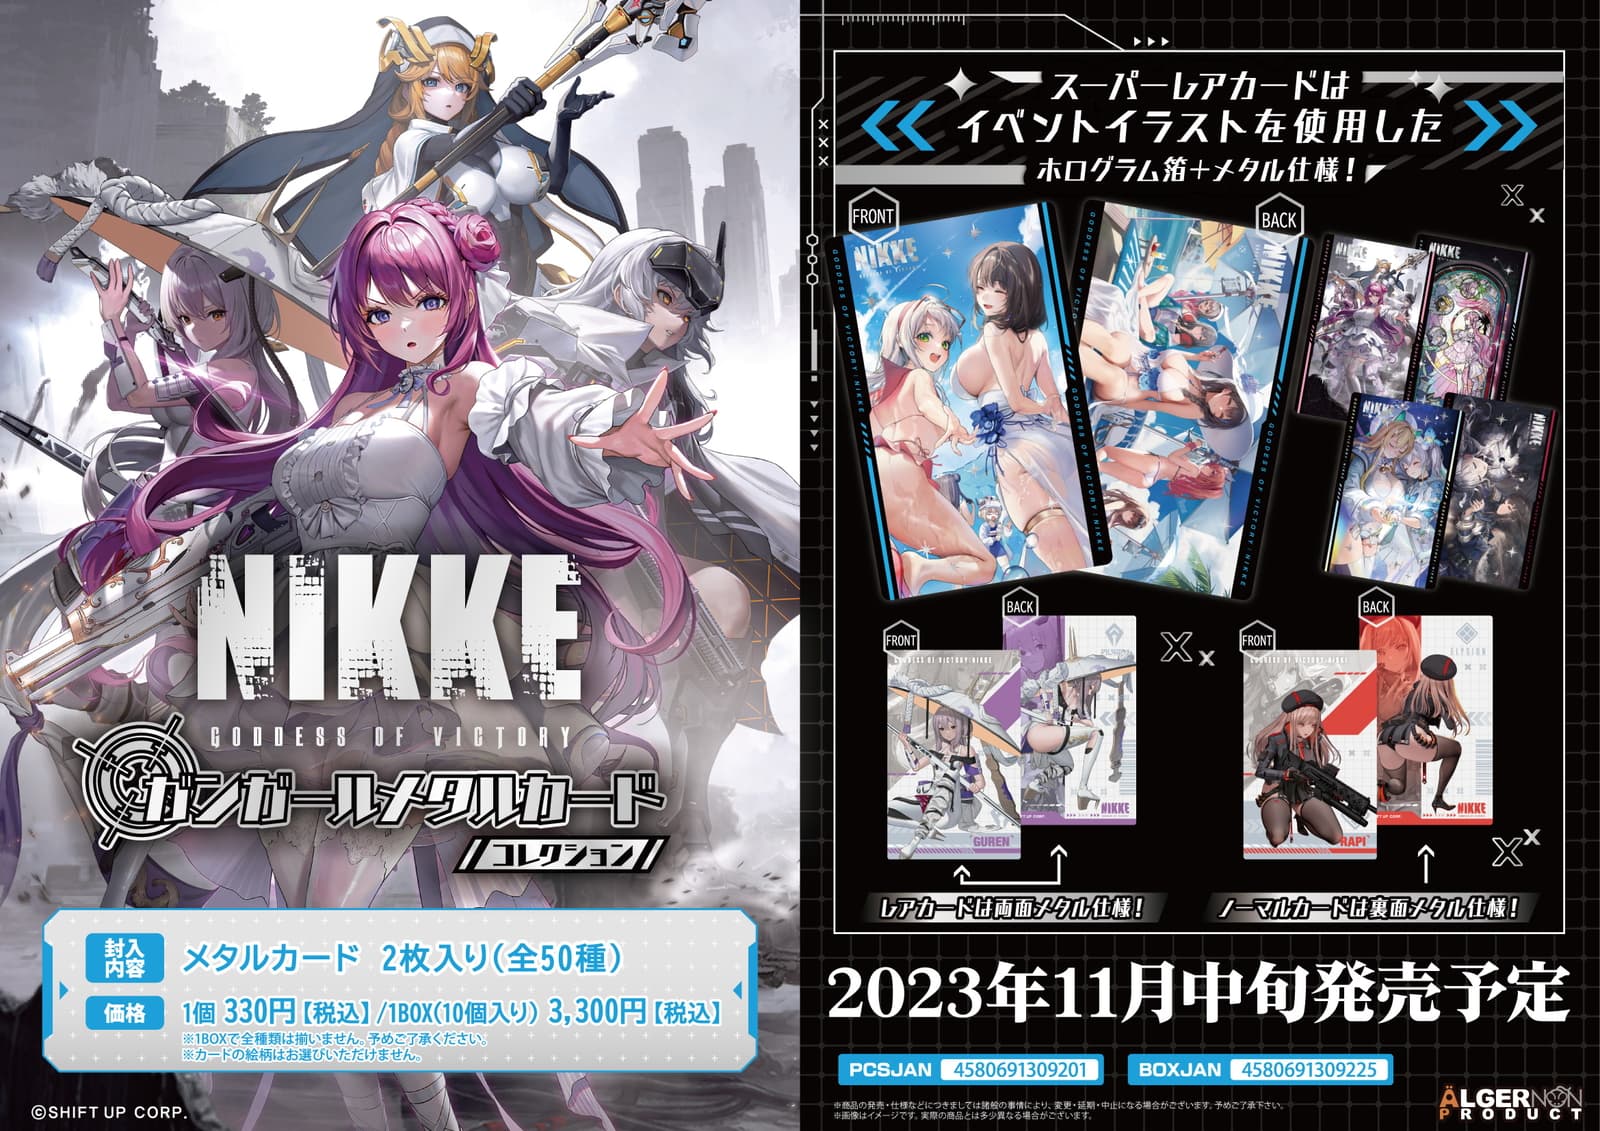 勝利の女神:NIKKE ガンガール メタルカードコレクション 11月中旬発売!